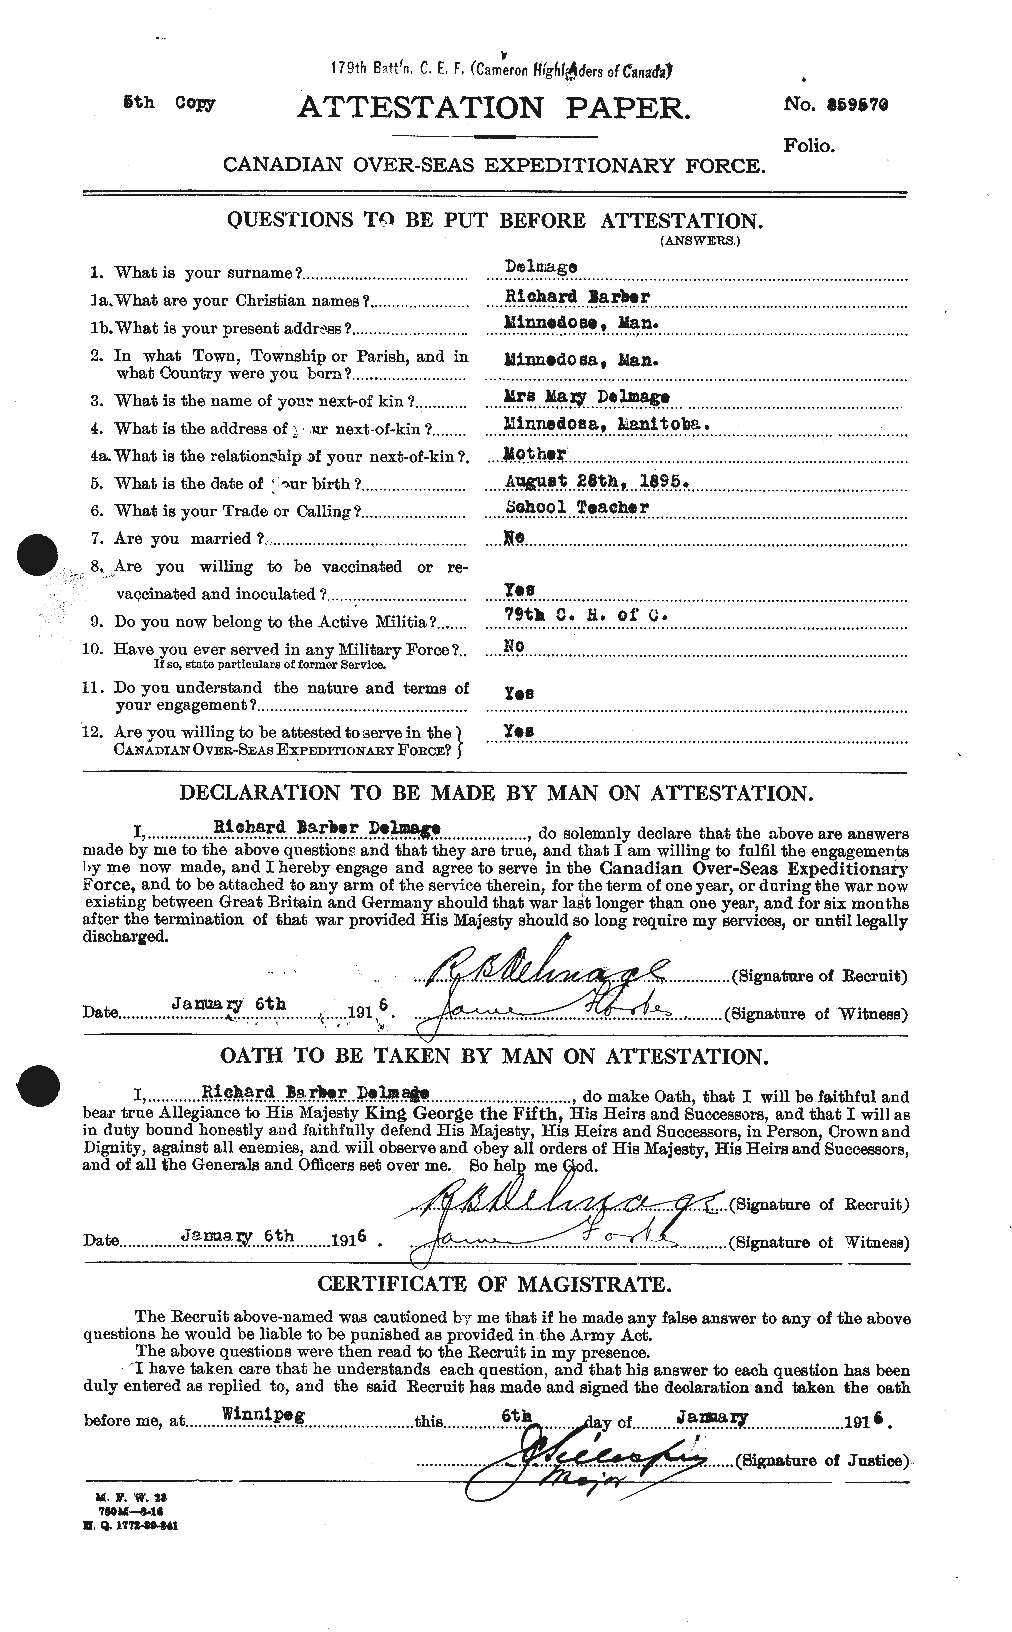 Dossiers du Personnel de la Première Guerre mondiale - CEC 287114a